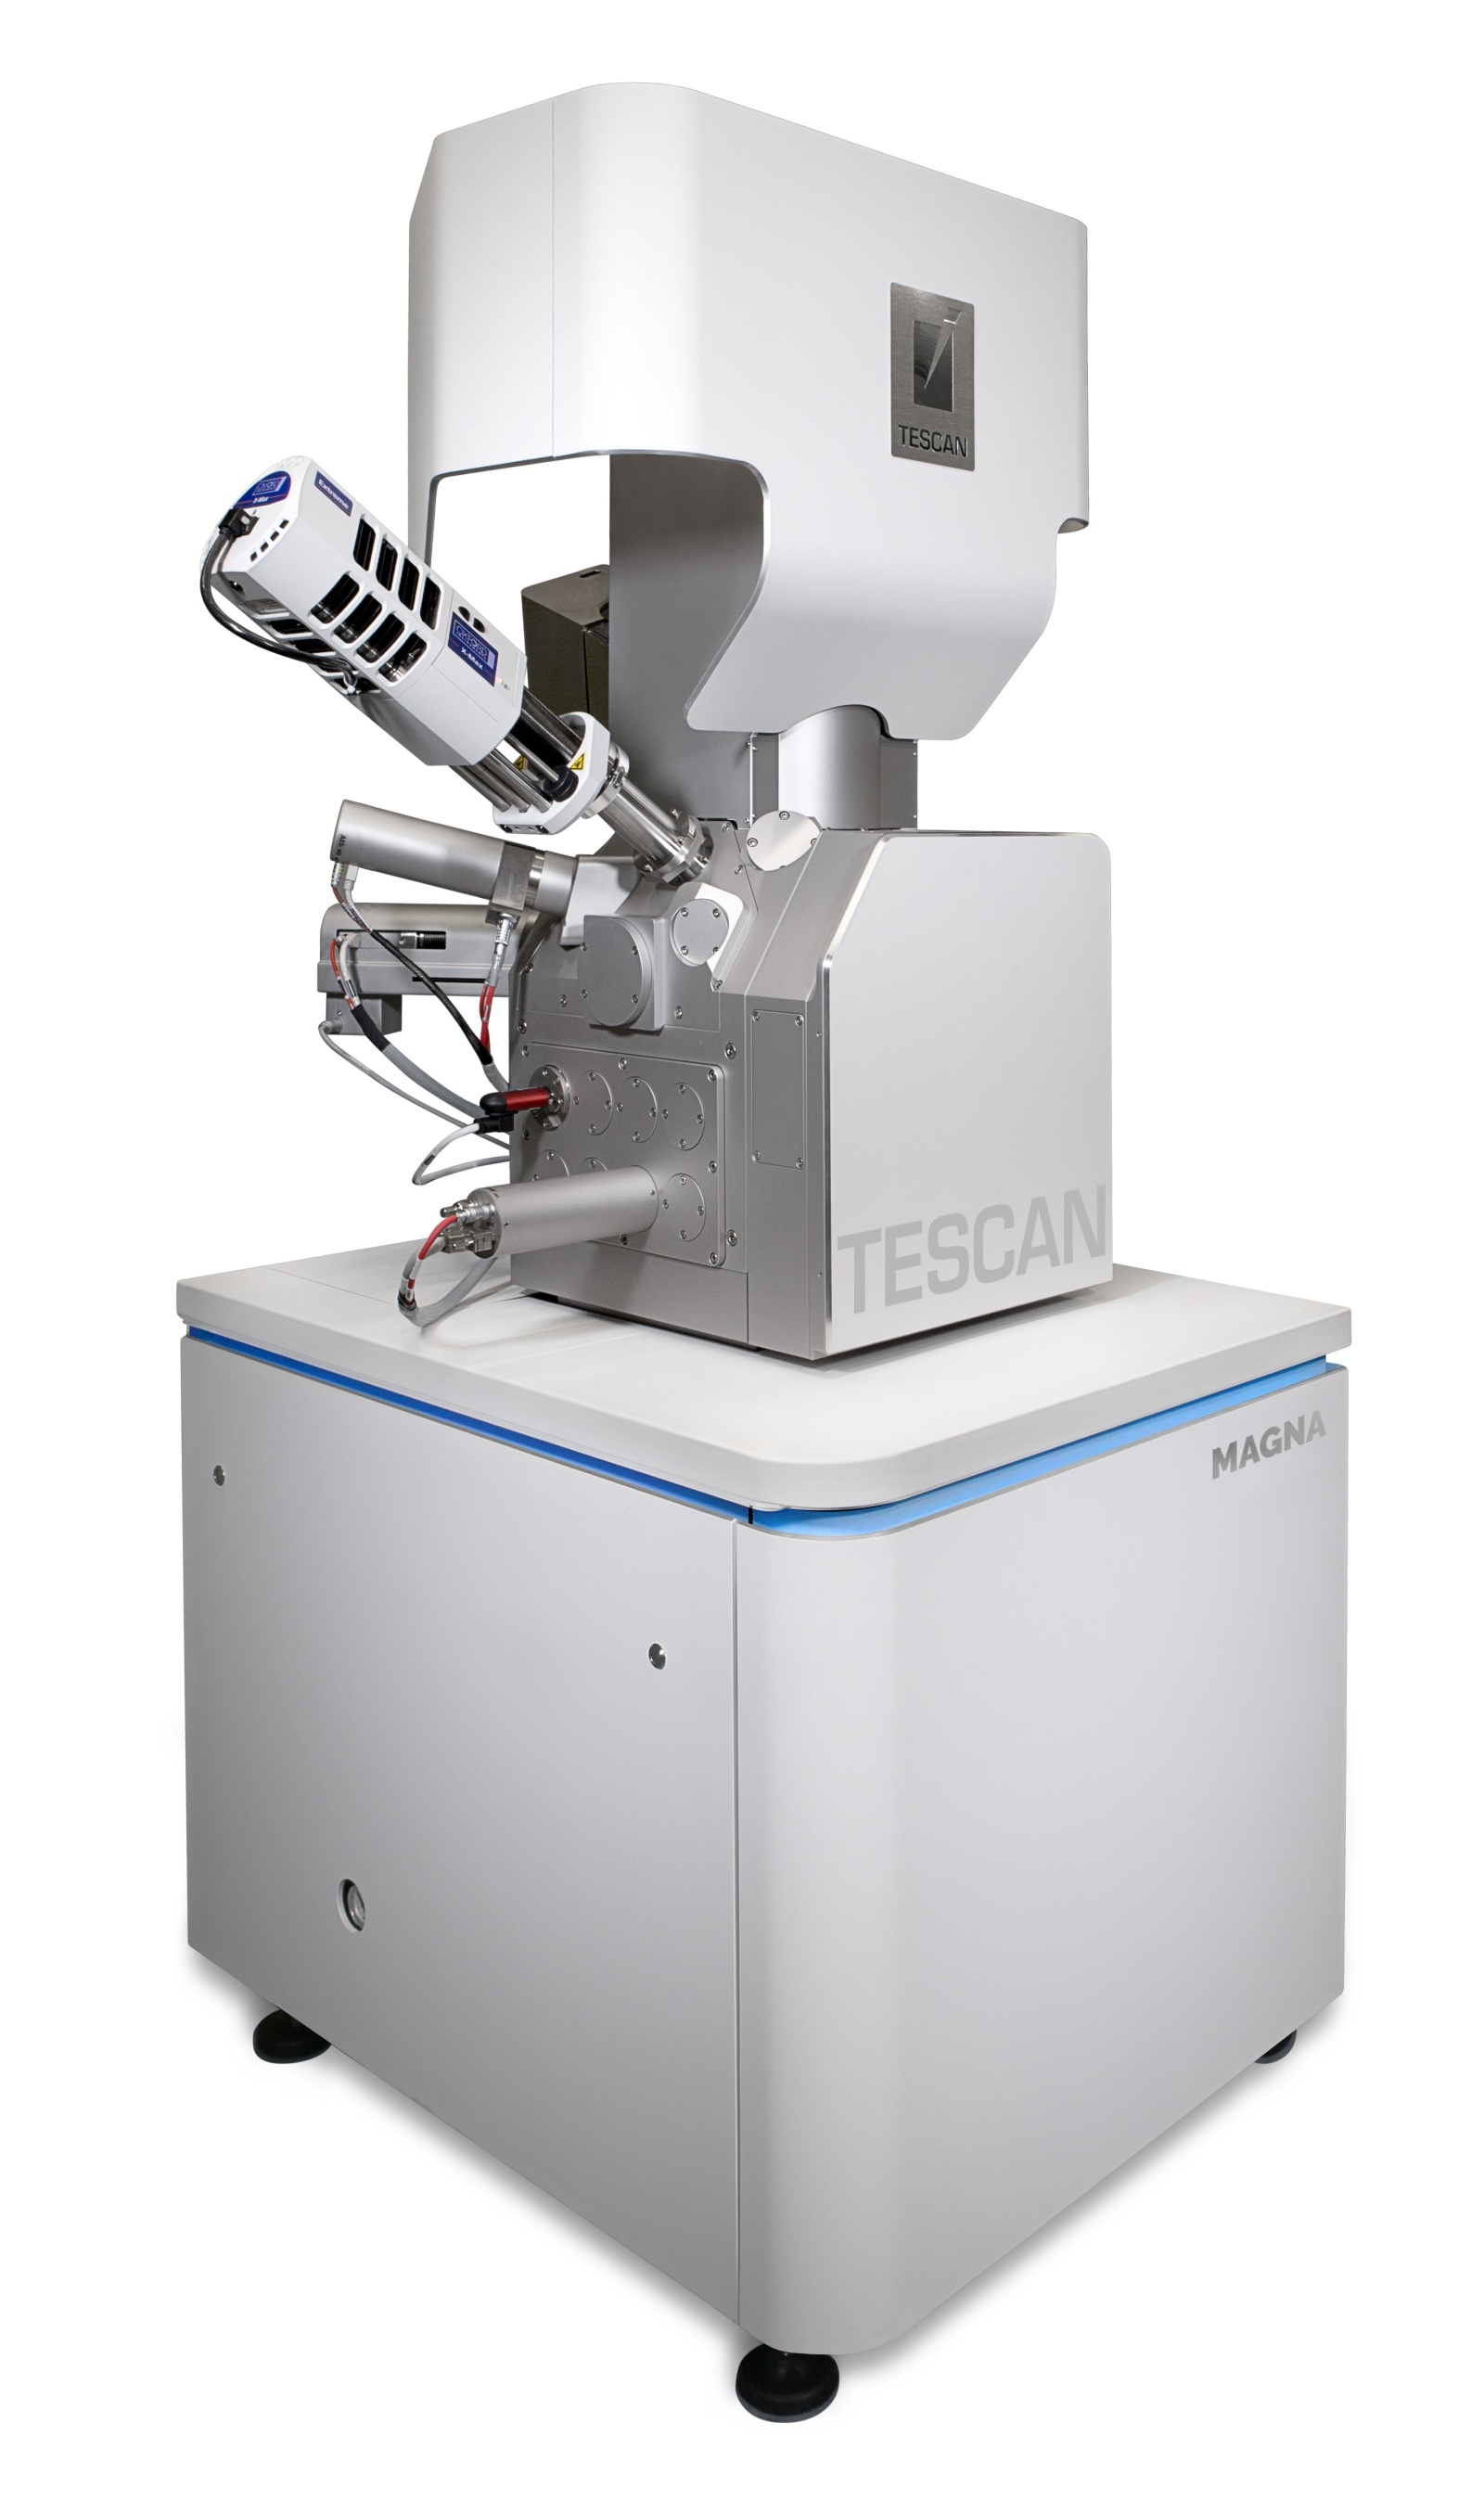 TESCAN MAGNA新一代超高分辨场发射扫描电镜的图片